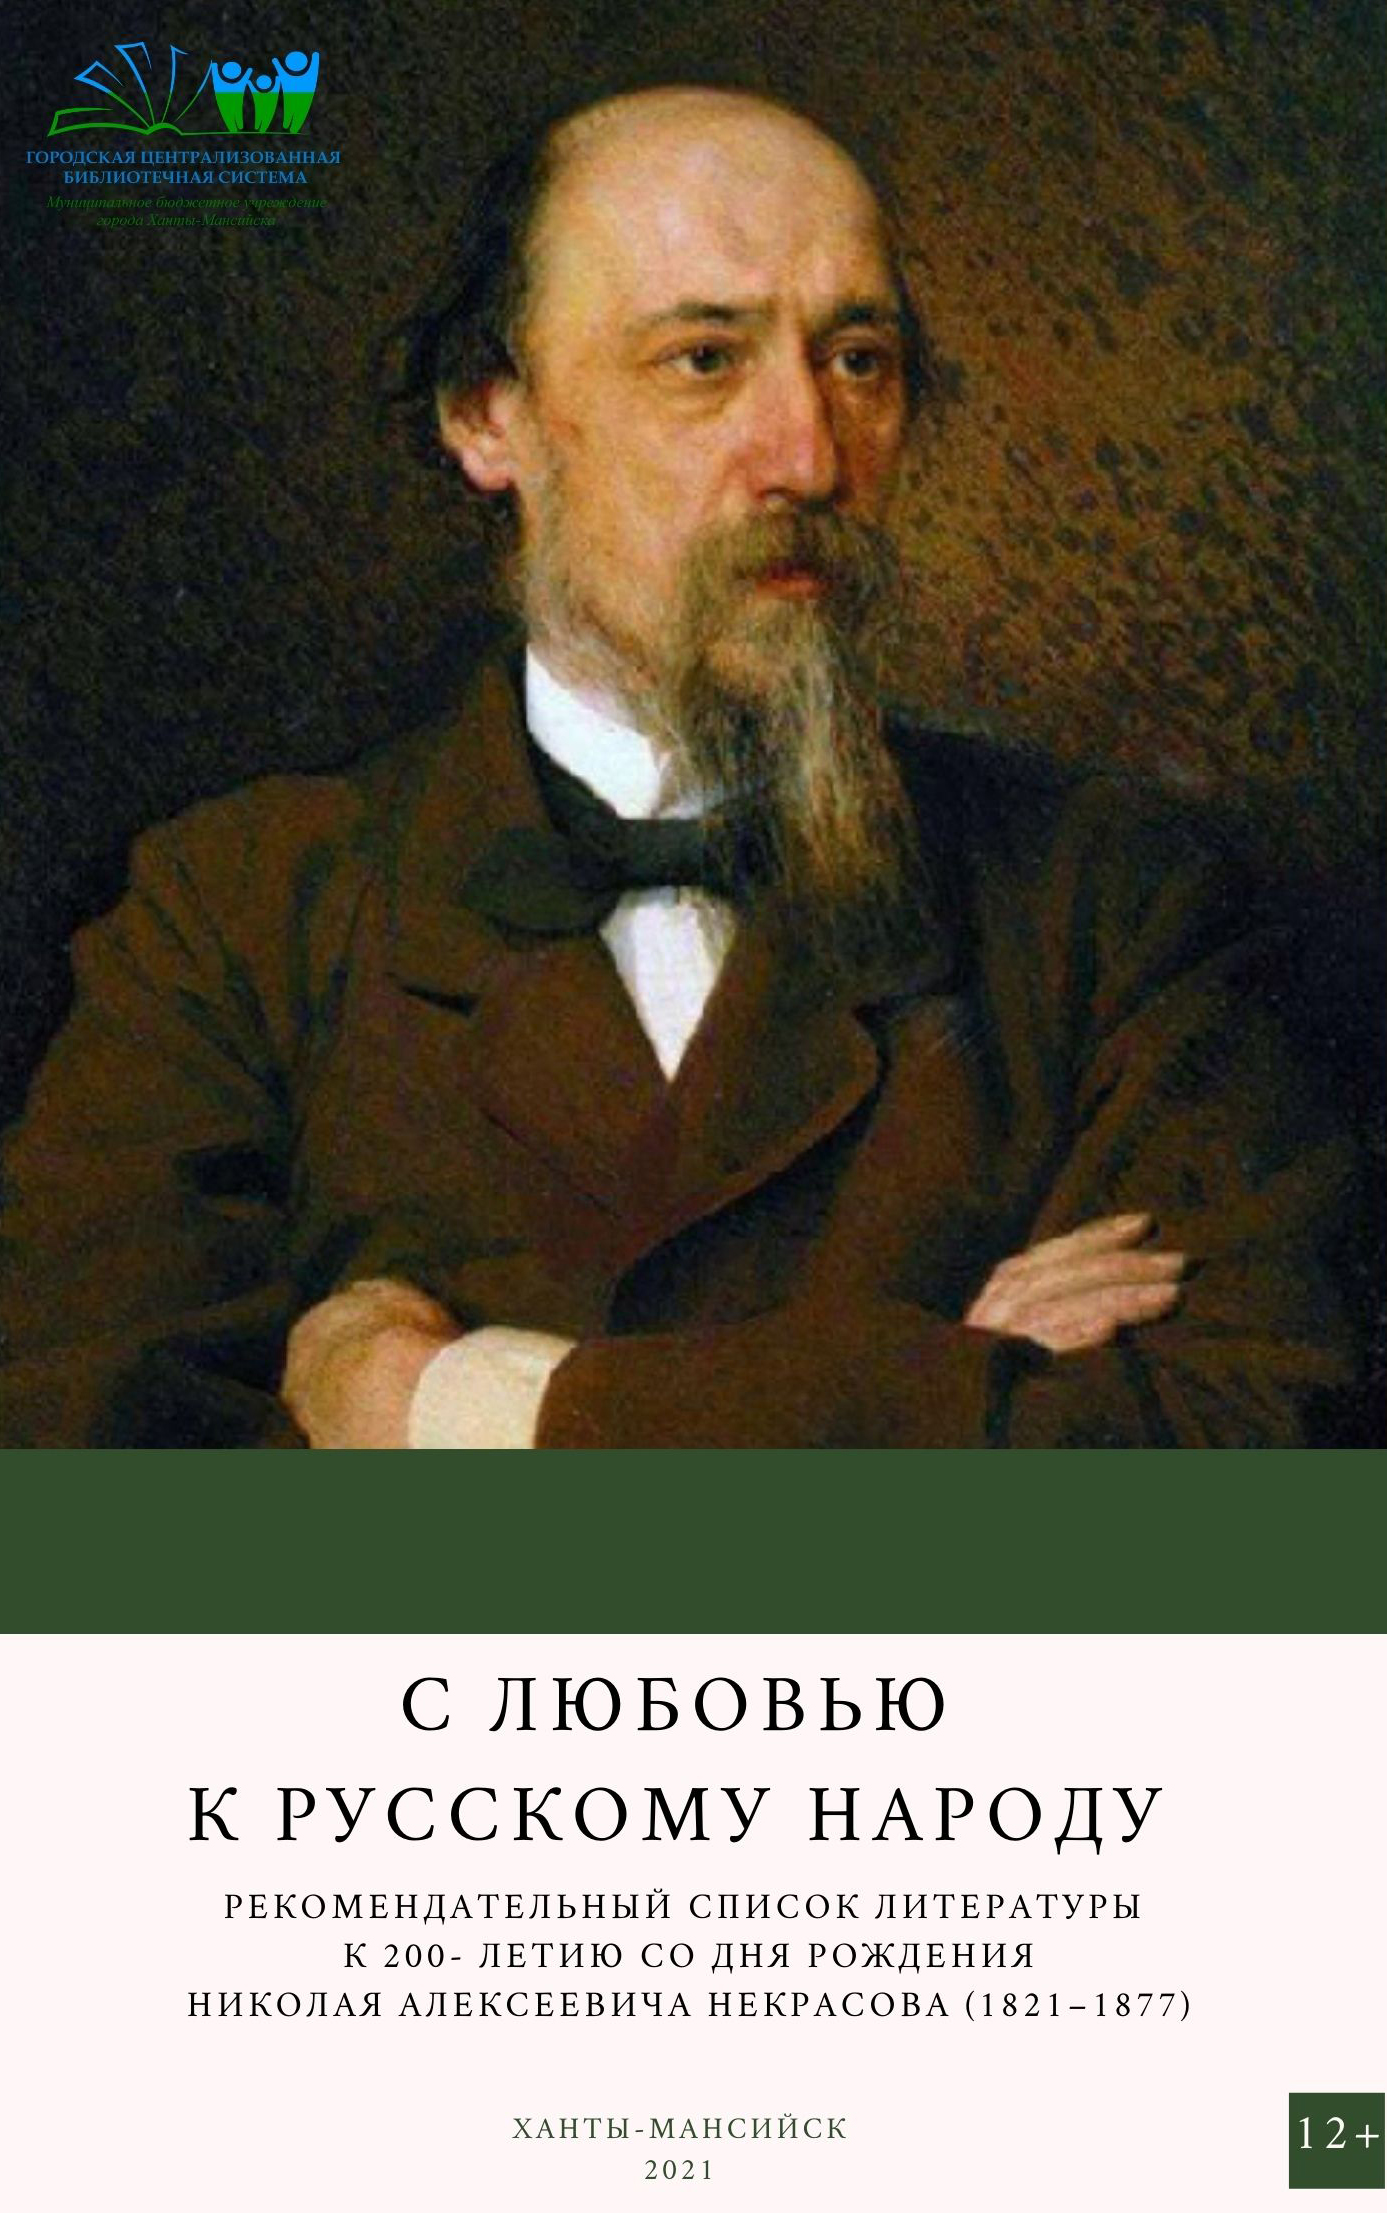 Портреты н.а. Некрасов русский поэт (1821—1877)